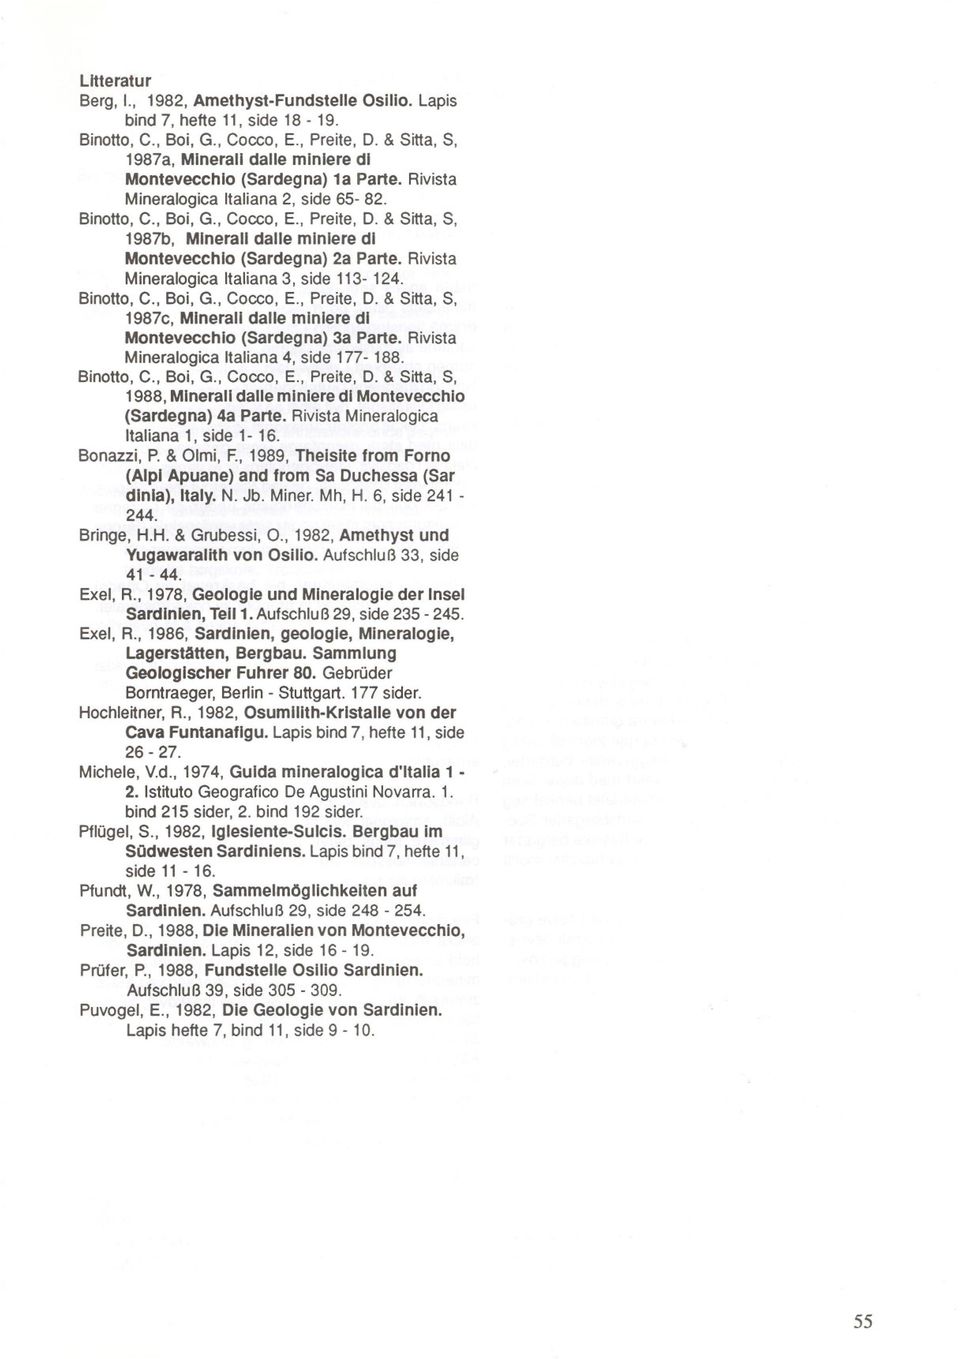 & Sitta, S, 1987b, MIneralI daue minlere dl Montevecchlo (Sardegna) 2a Parte. Rivista Mineralogica Italiana 3, side 113-124. Binotto, C., Boi, G., Cocco, E., Preite, D. & Sitta, S, 1987c, Mineral!